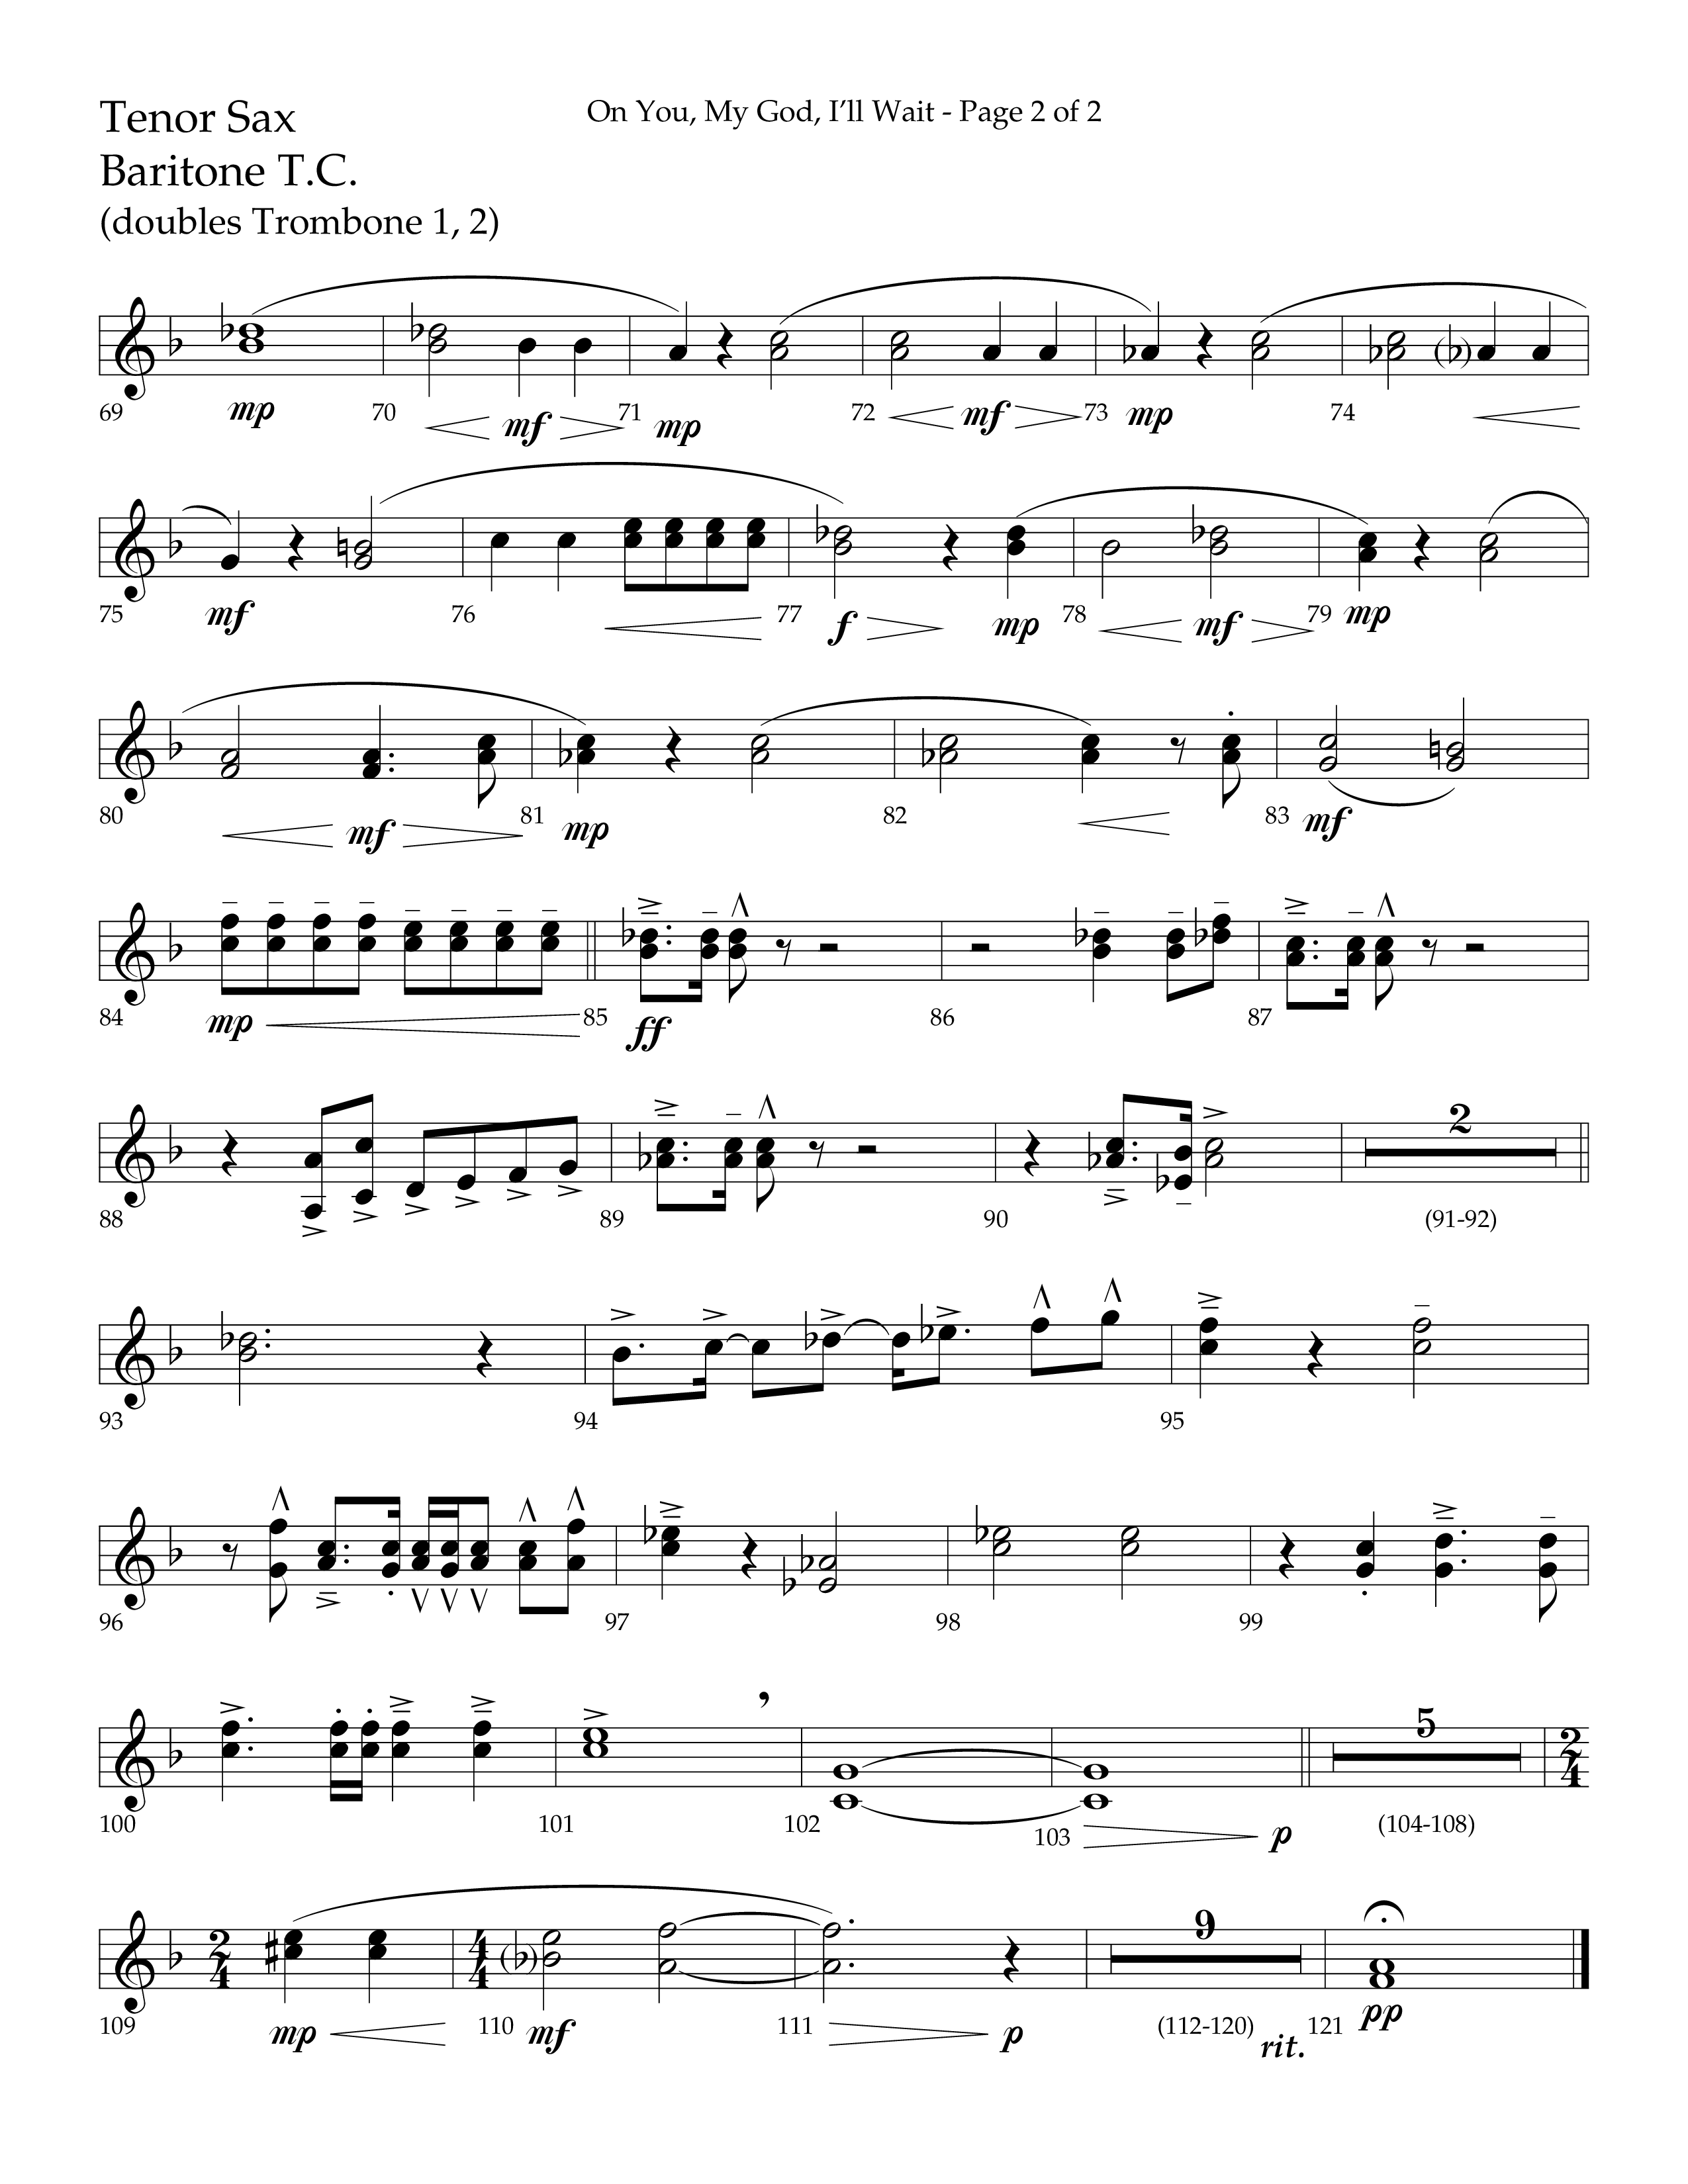 On You My God I'll Wait (Choral Anthem SATB) Tenor Sax/Baritone T.C. (Lifeway Choral / Arr. Craig Adams / Arr. Mike Harland)